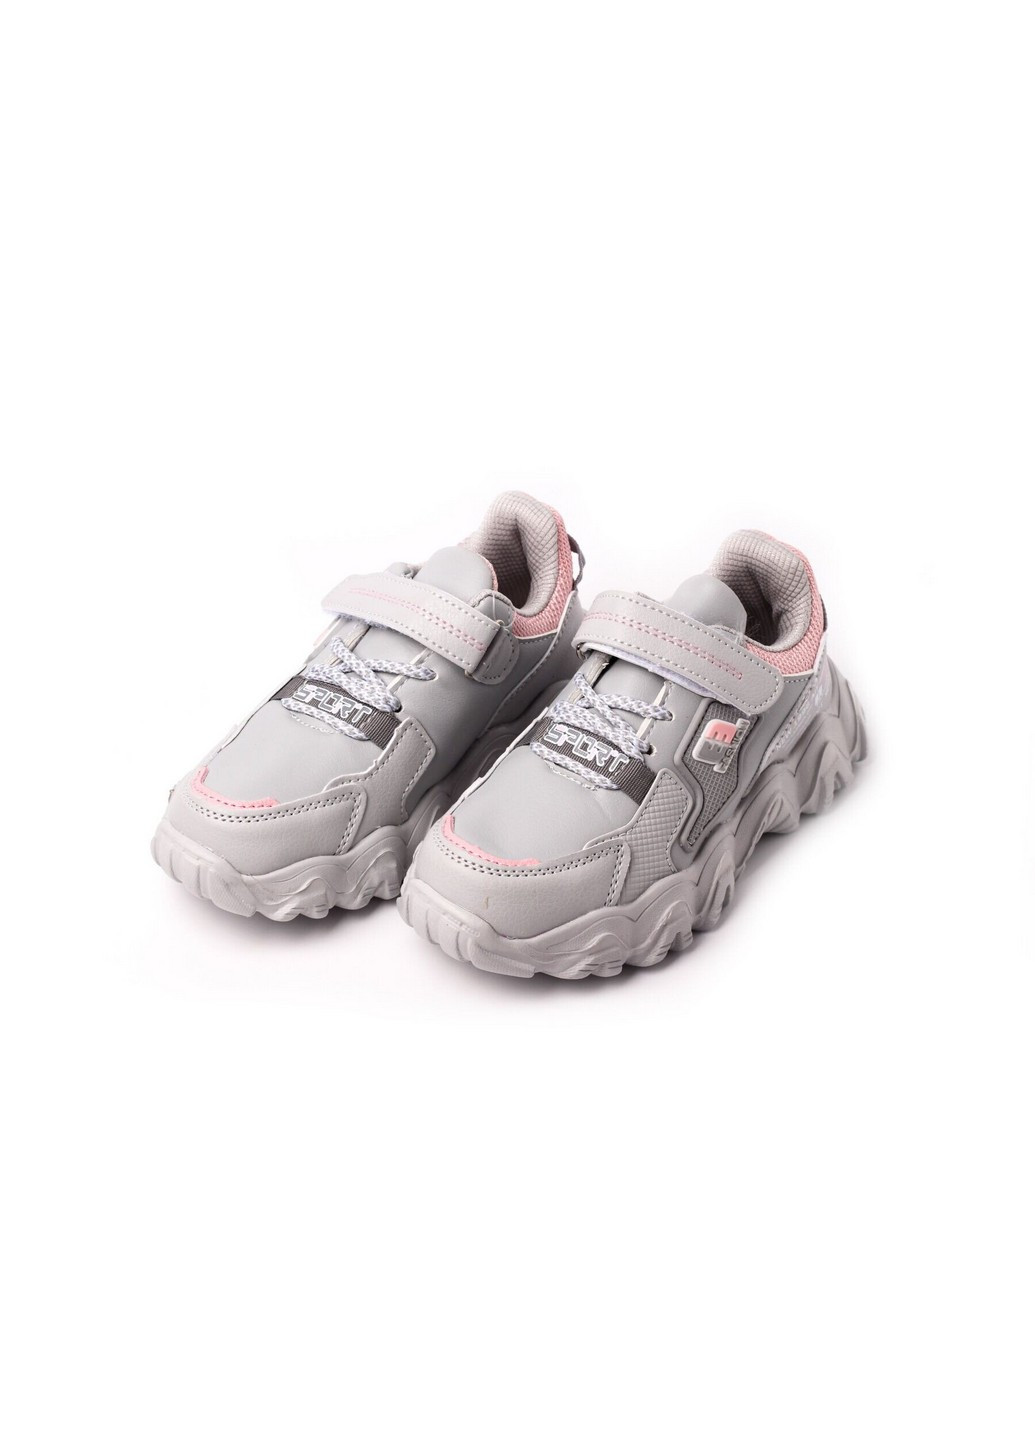 Сірі осінні кросівки дитячі, для дівчинки, 30 розмір 2000903502333 Erra